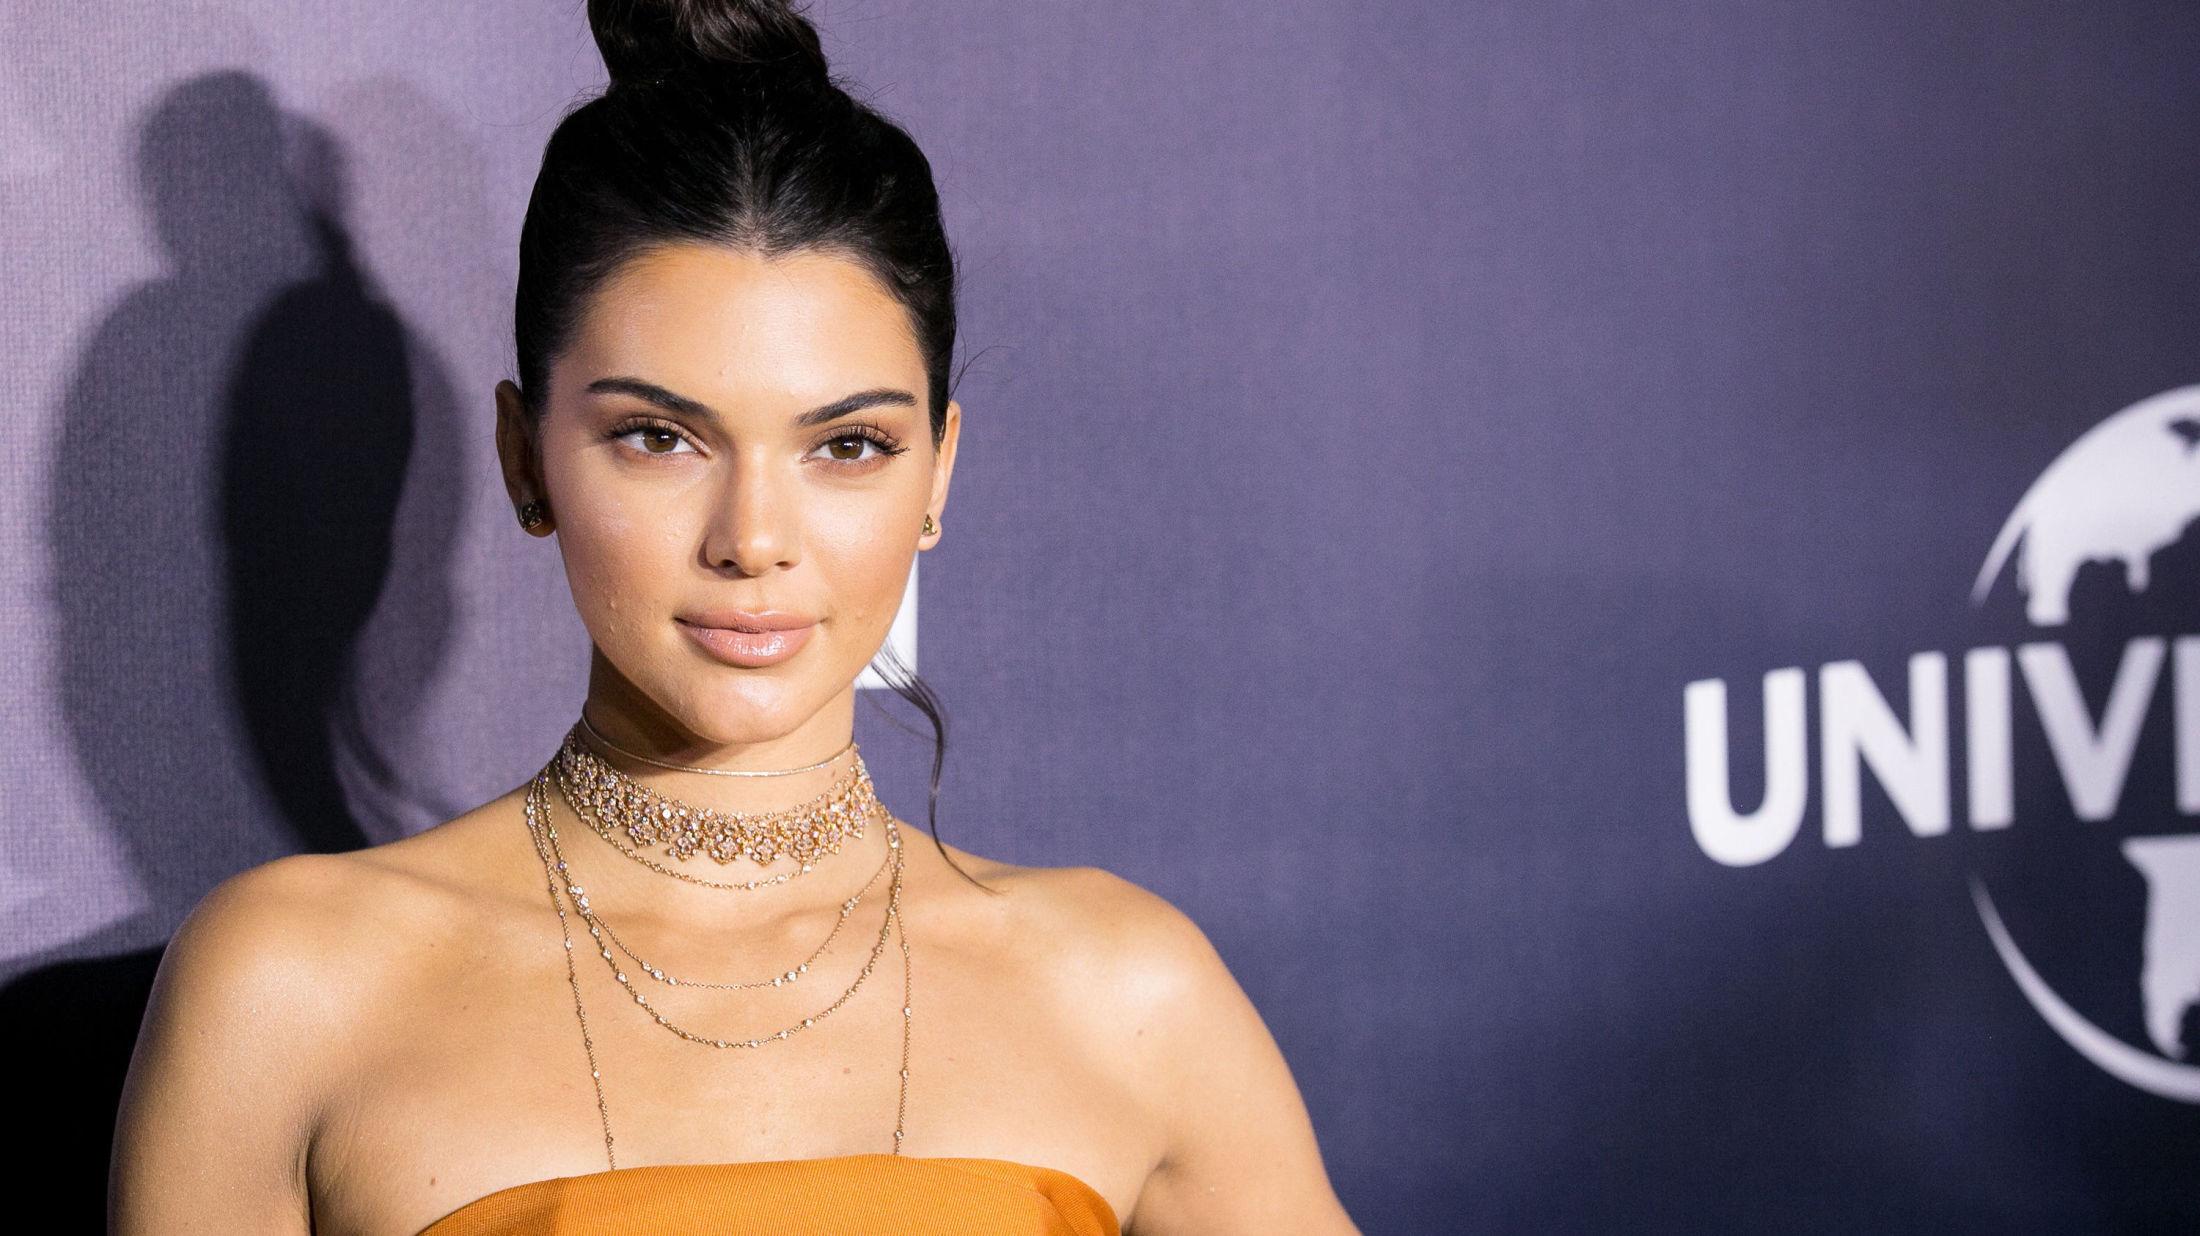 AVVISER LEPPERYKTER: Kendall Jenner reagerer kraftig på at folk spekulerer i om hun har forstørret leppene sine og operert ansiktet sitt. Her er modellen på Golden Globes tidligere denne uken. Foto: Getty Images